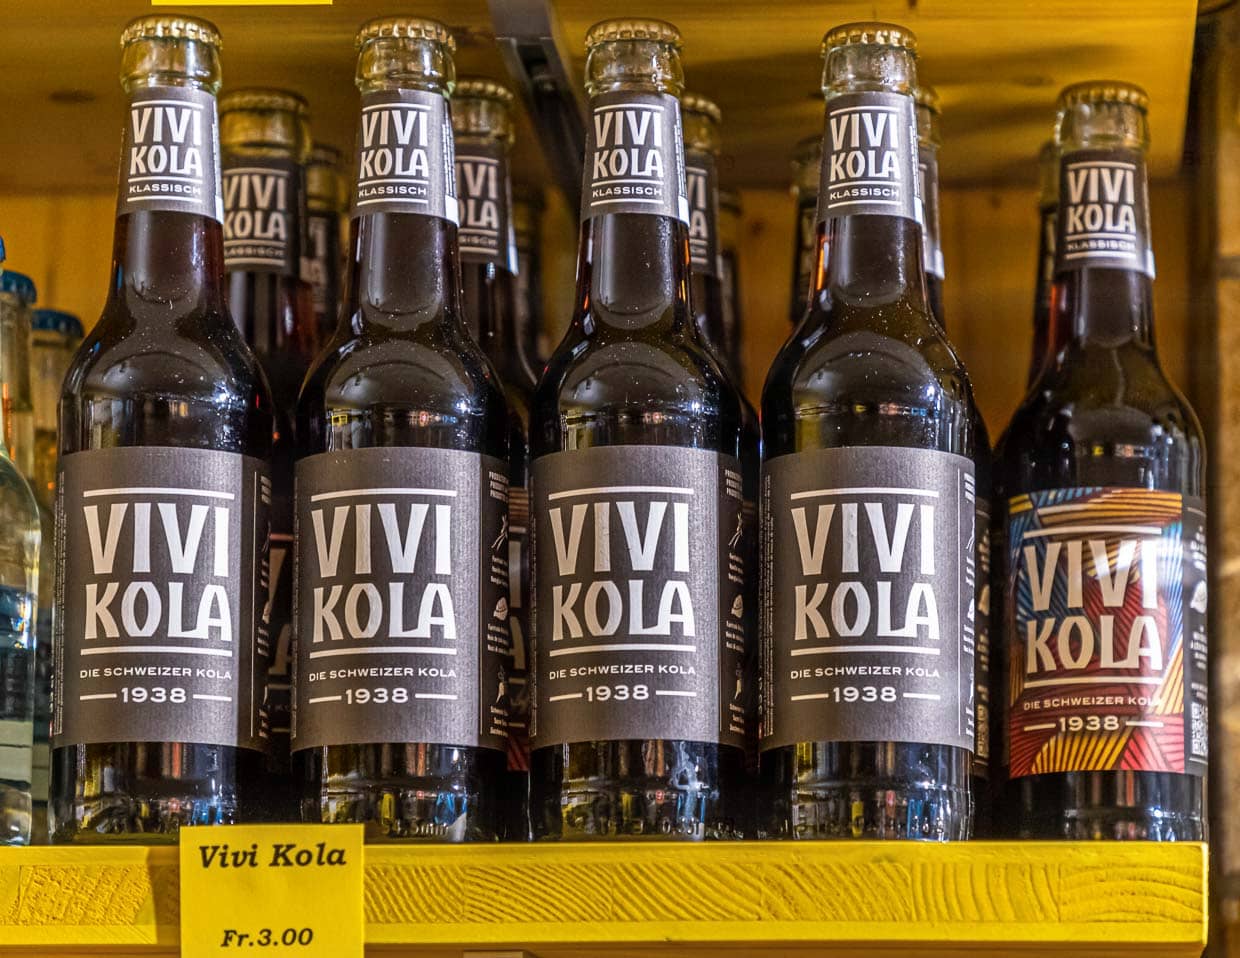 Vivi-Kola ist eines dieser coolen Produkte aus Zürich. Ein Rezept von 1938 wurde wiederbelebt. Das Geheimnis der Cola-Nuss kann man auf der Innenseite des Etiketts lesen, sobald man die Flasche geleert hat / © Foto: Georg Berg